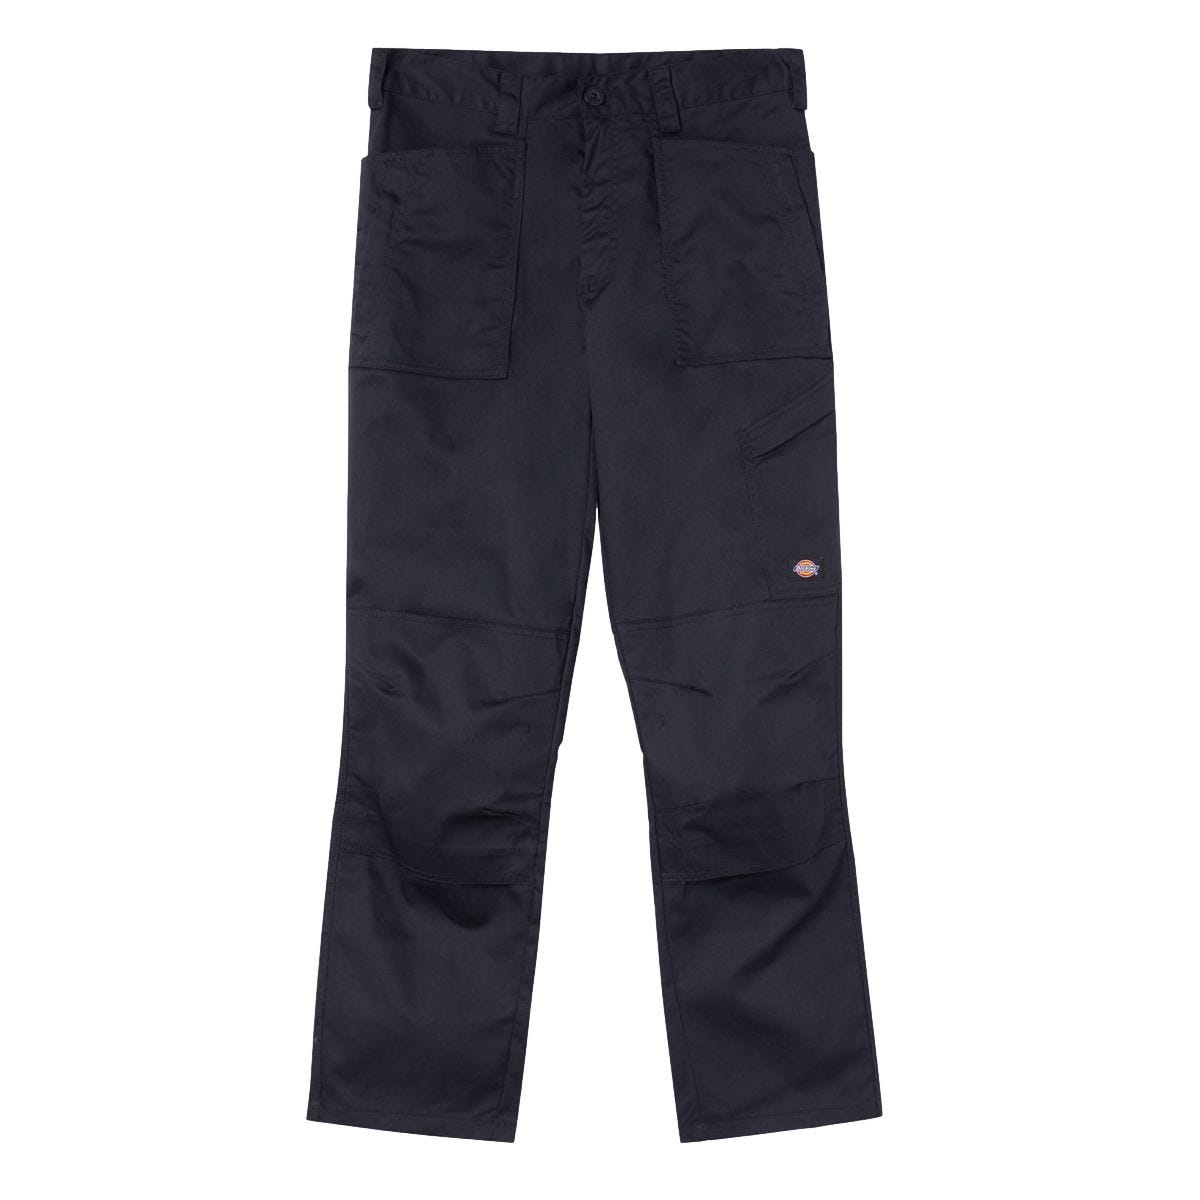 Pantalon de travail Action Flex noir - Dickies - Taille 44 1